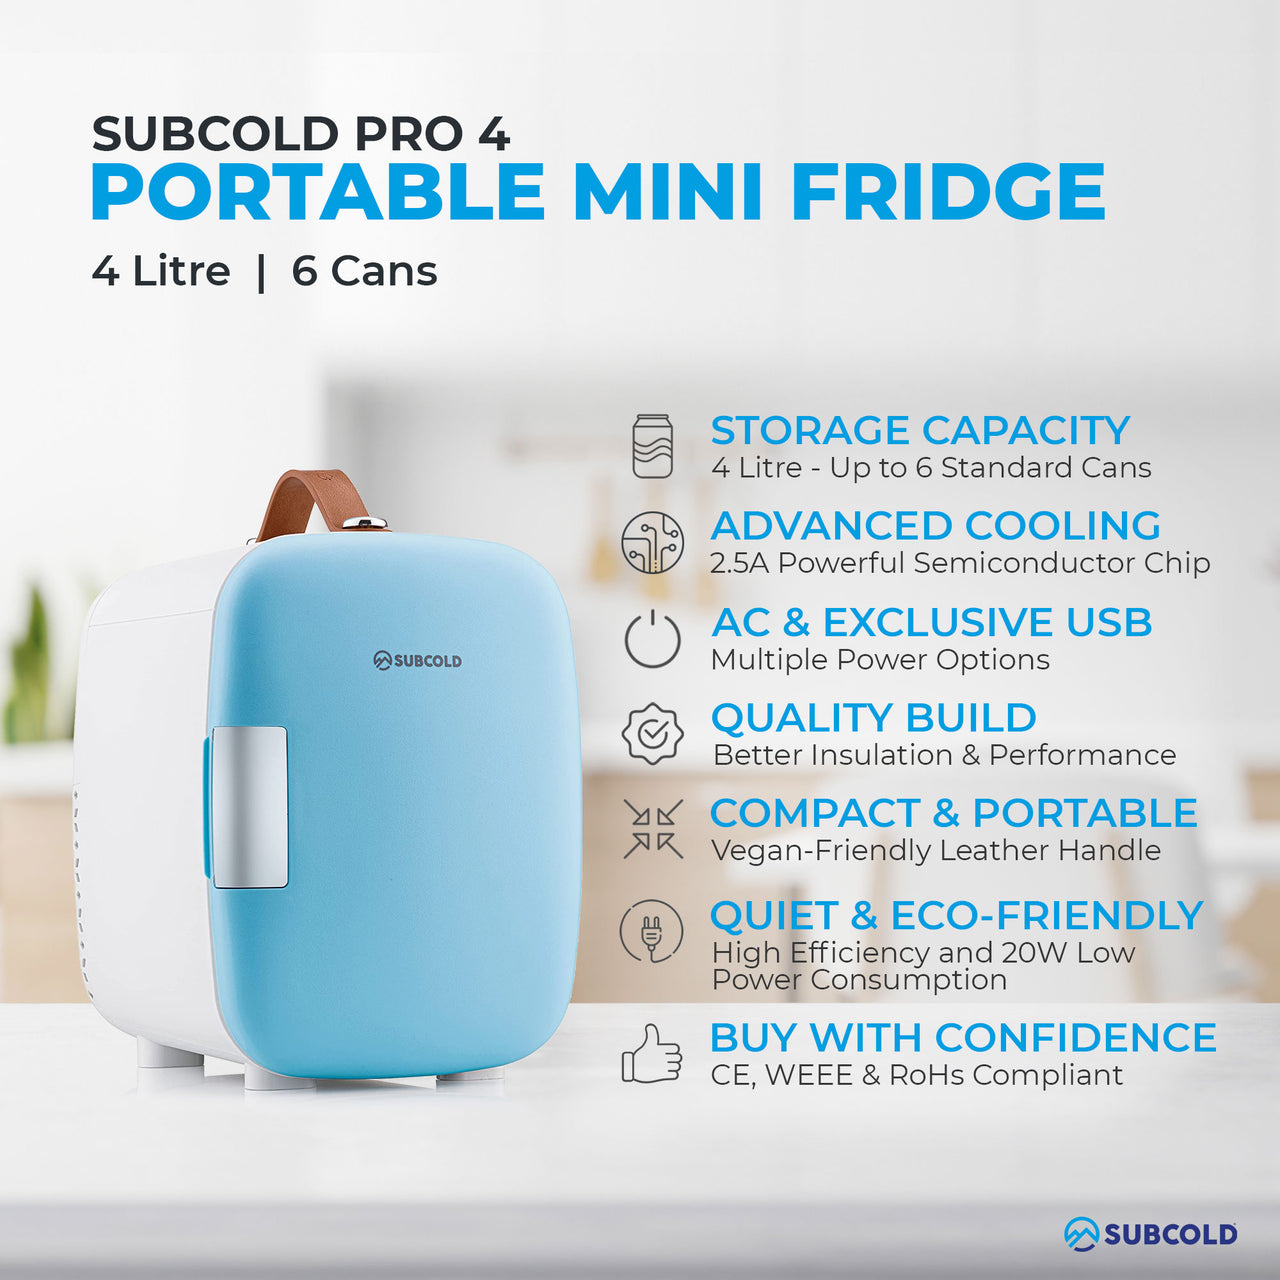 Subcold Pro 4 litre blue mini fridge features infographic